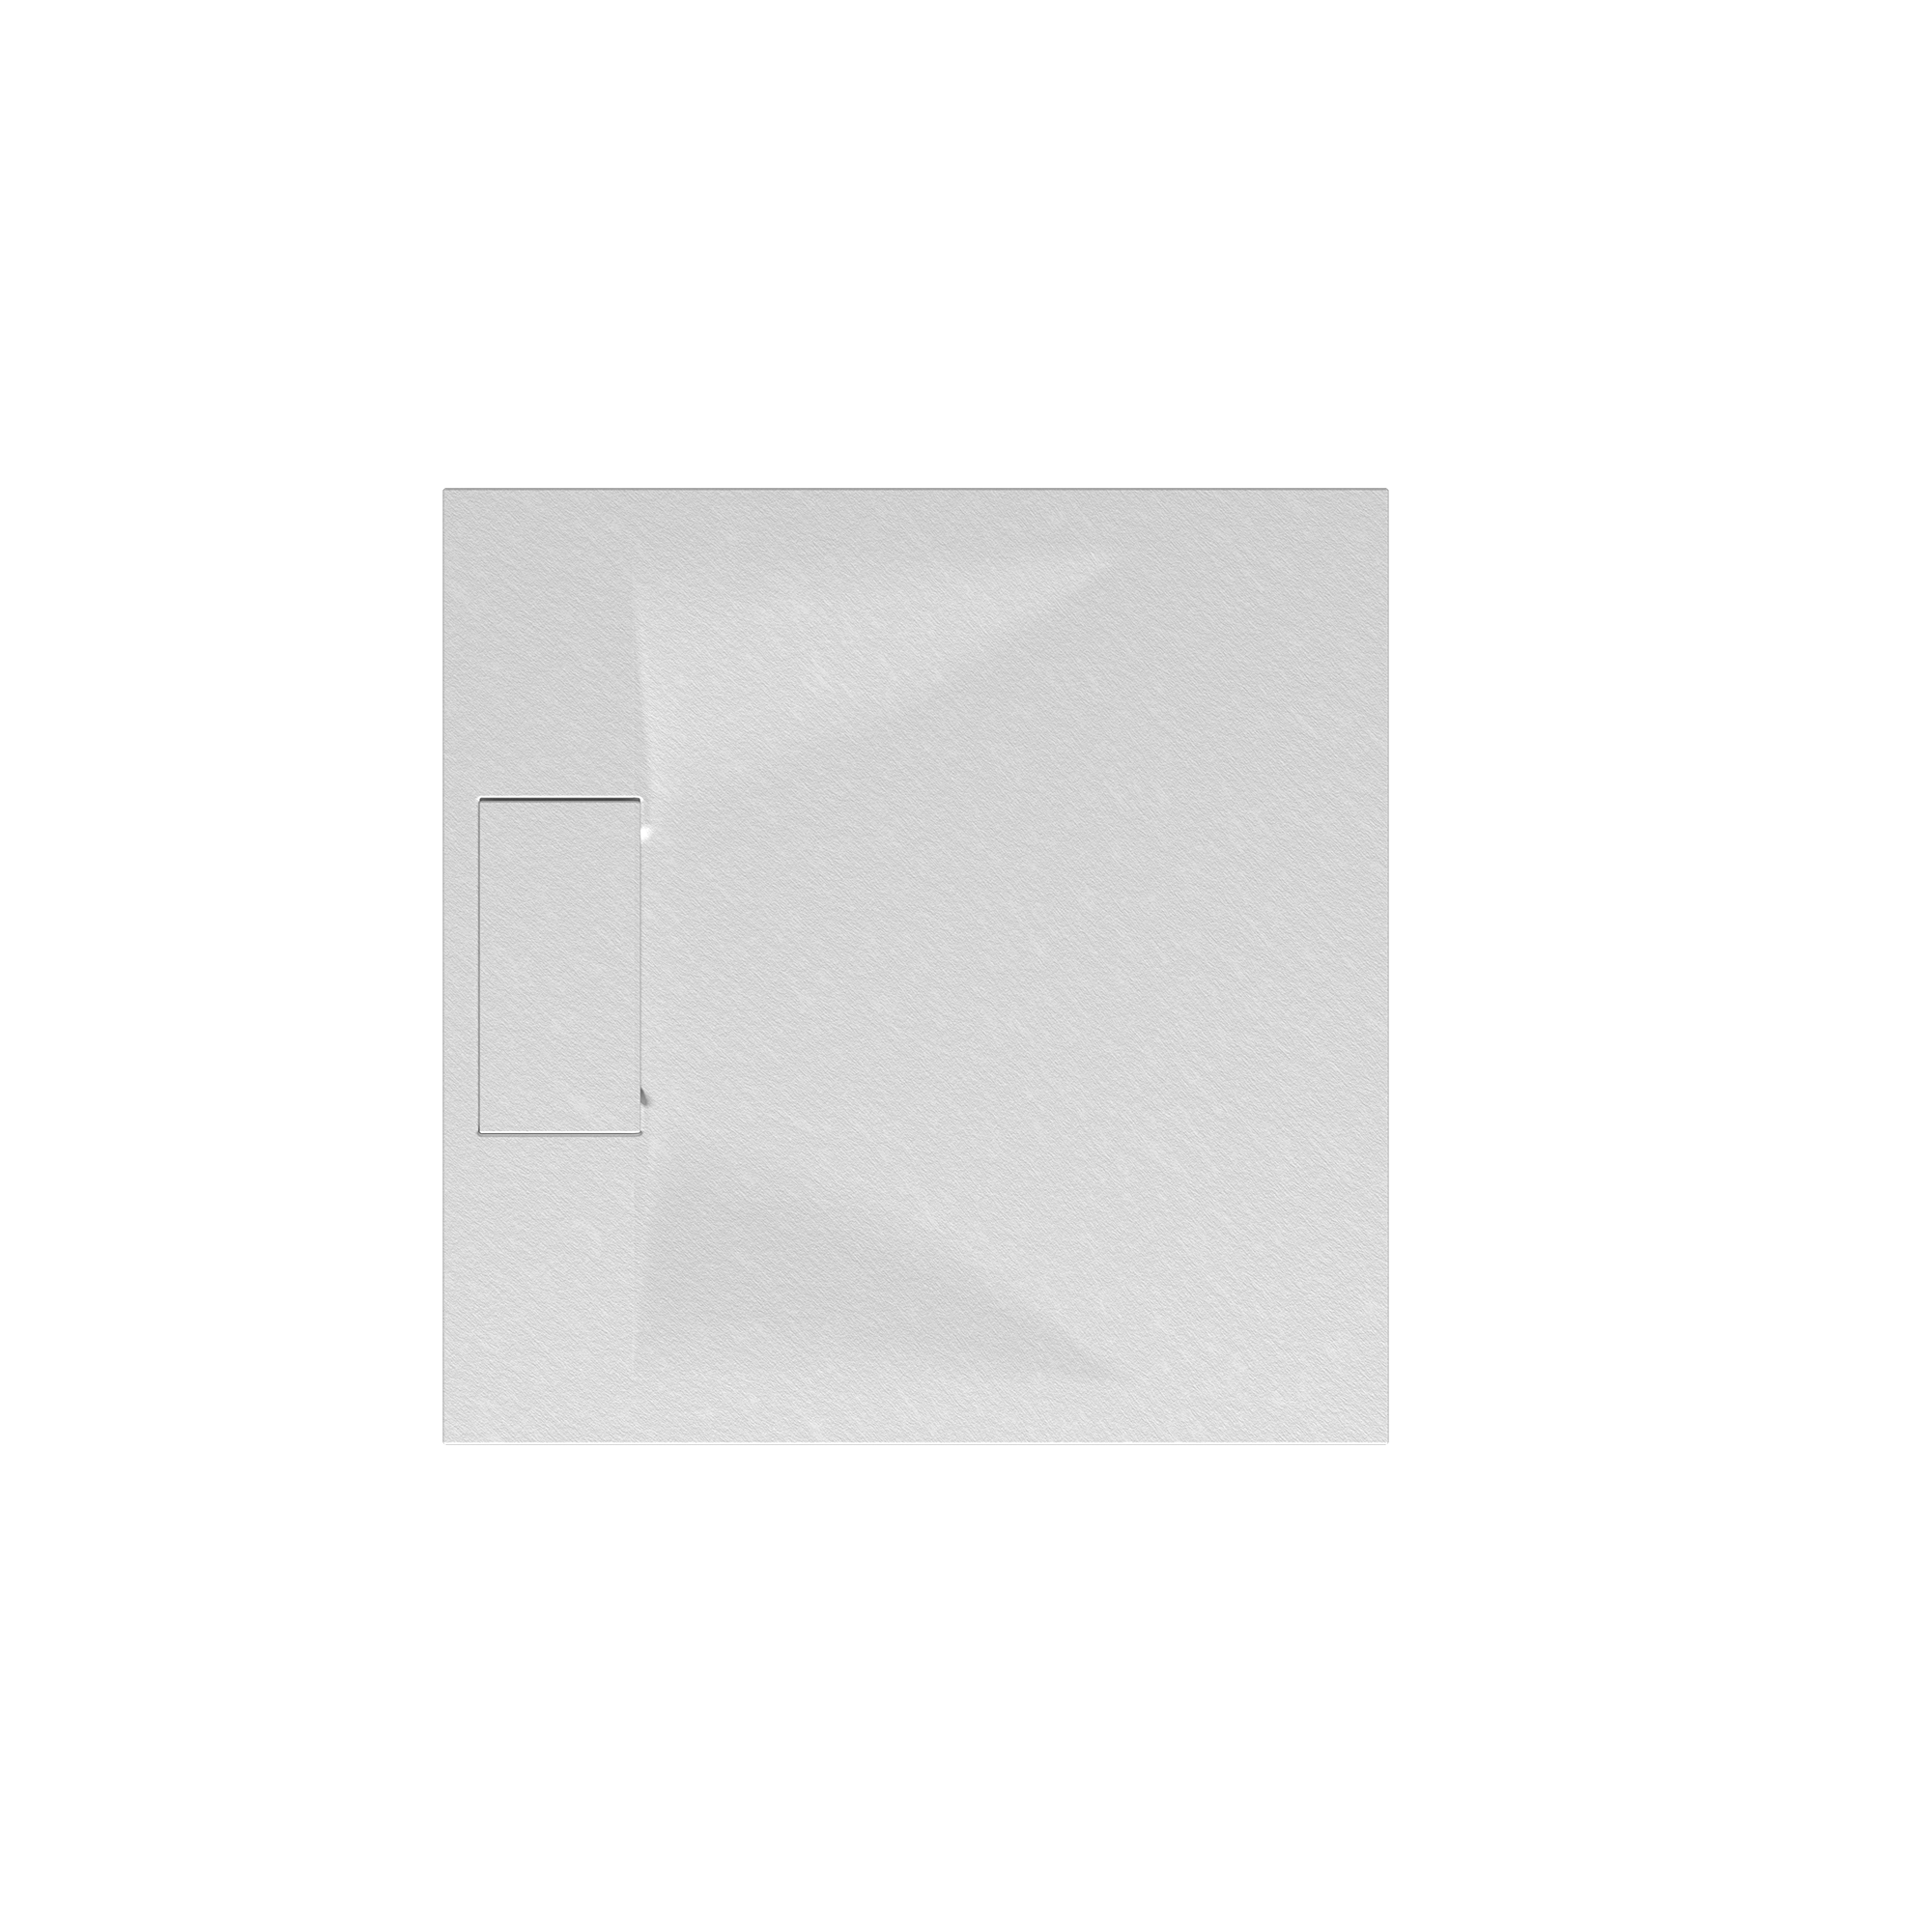 Duschwanne 'Lite Line' Steinoptik weiß 80 x 80 cm + product picture